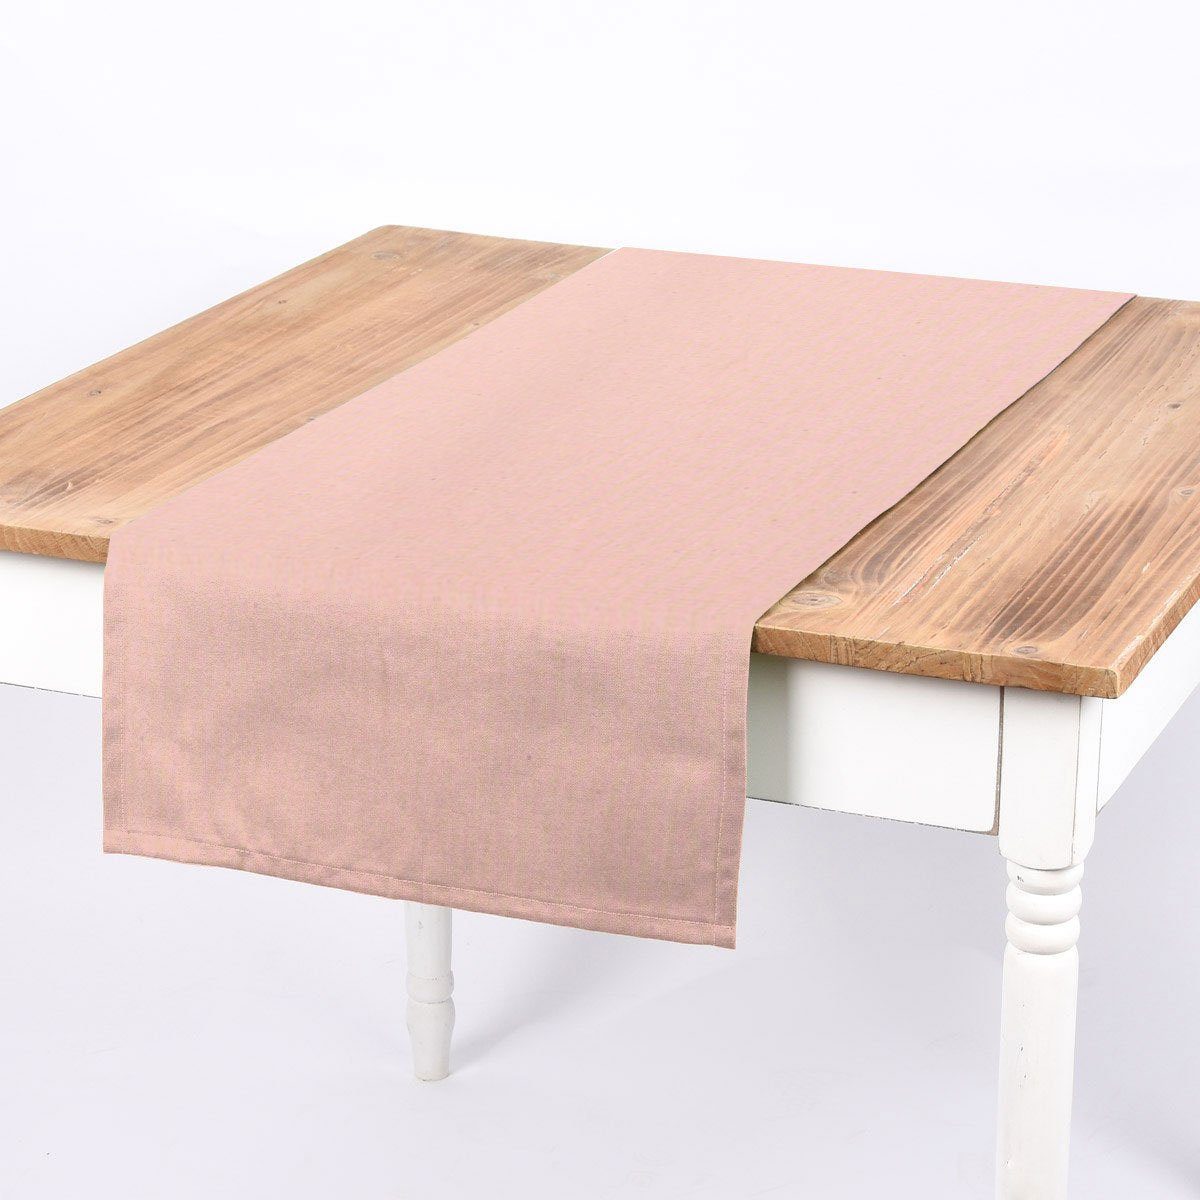 SCHÖNER LEBEN. Tischläufer SCHÖNER LEBEN. Tischläufer Leinenlook uni rosa 40x160cm, handmade